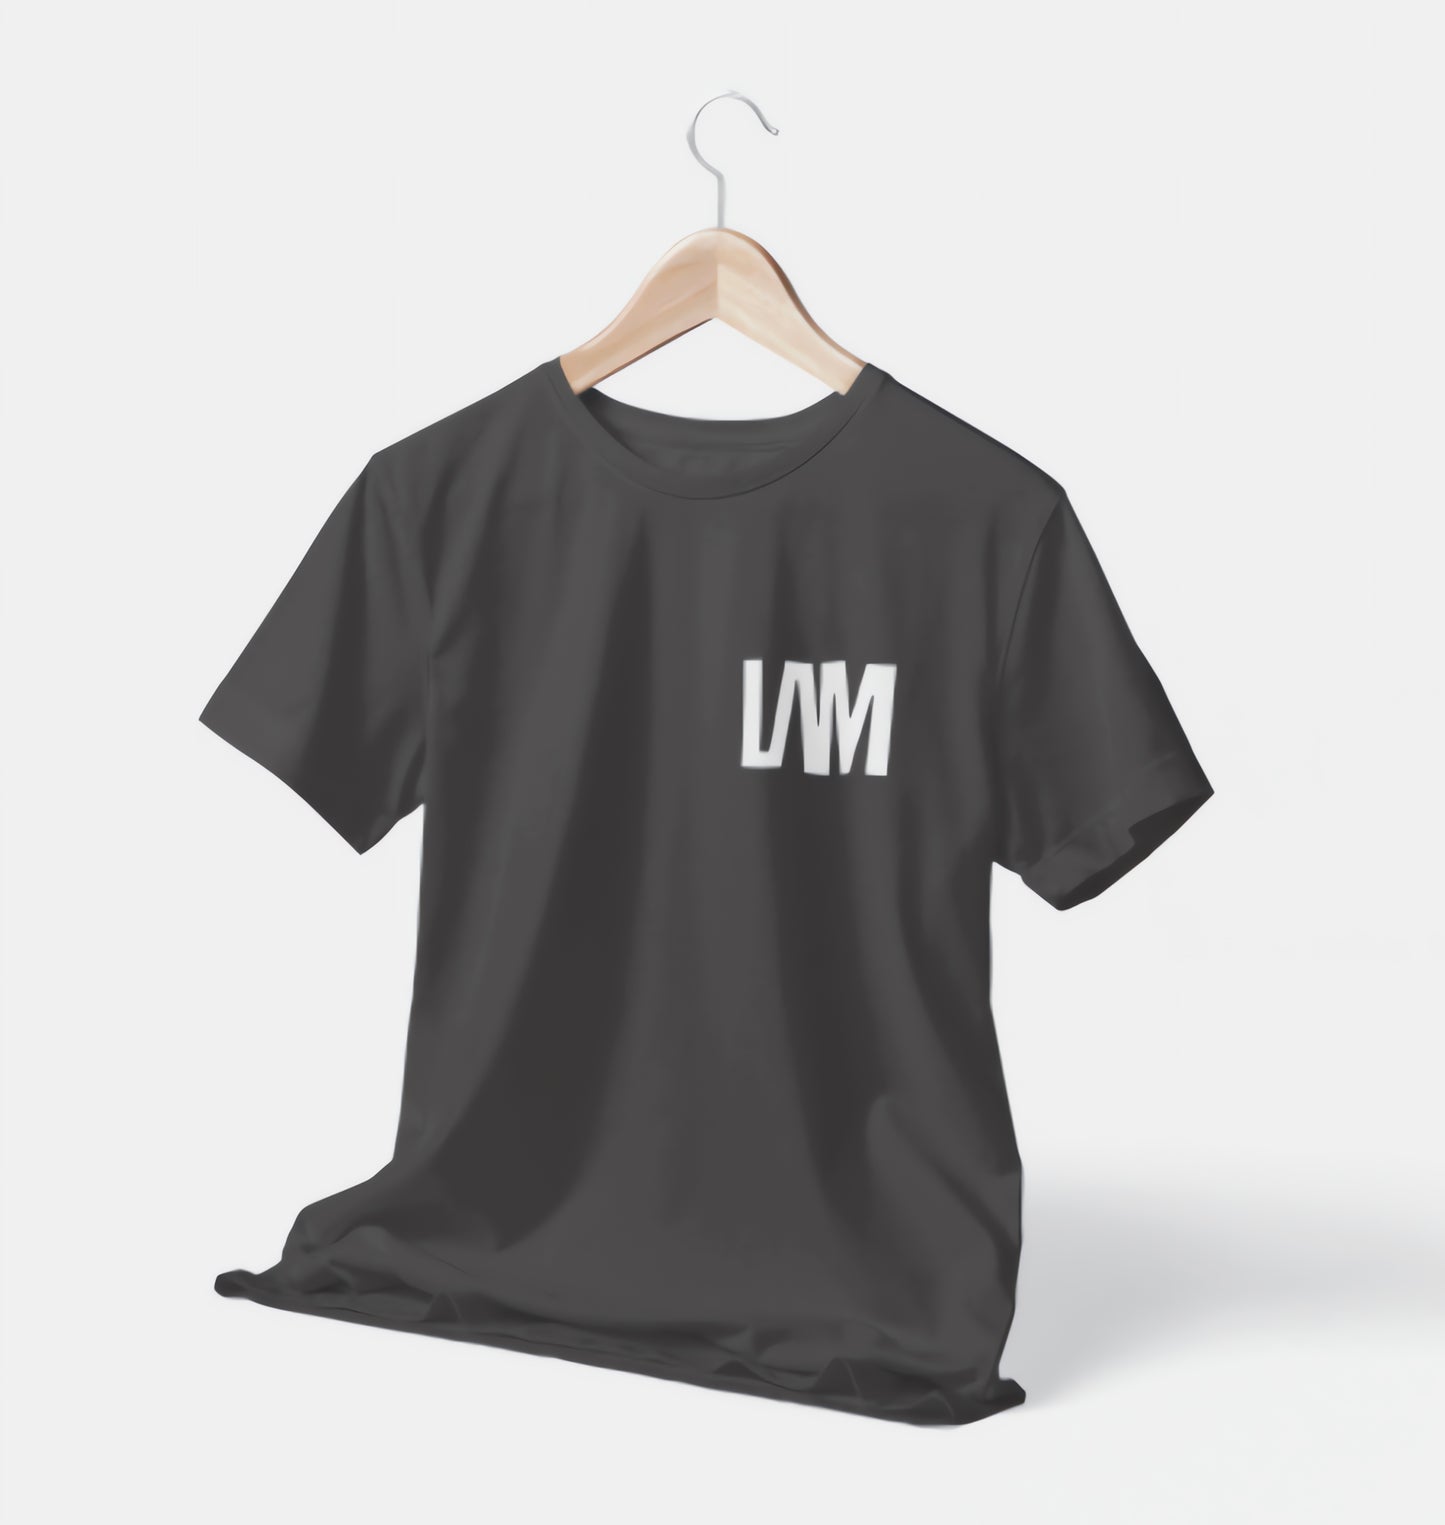 LAM Logo  - Faded Black T-Shirt